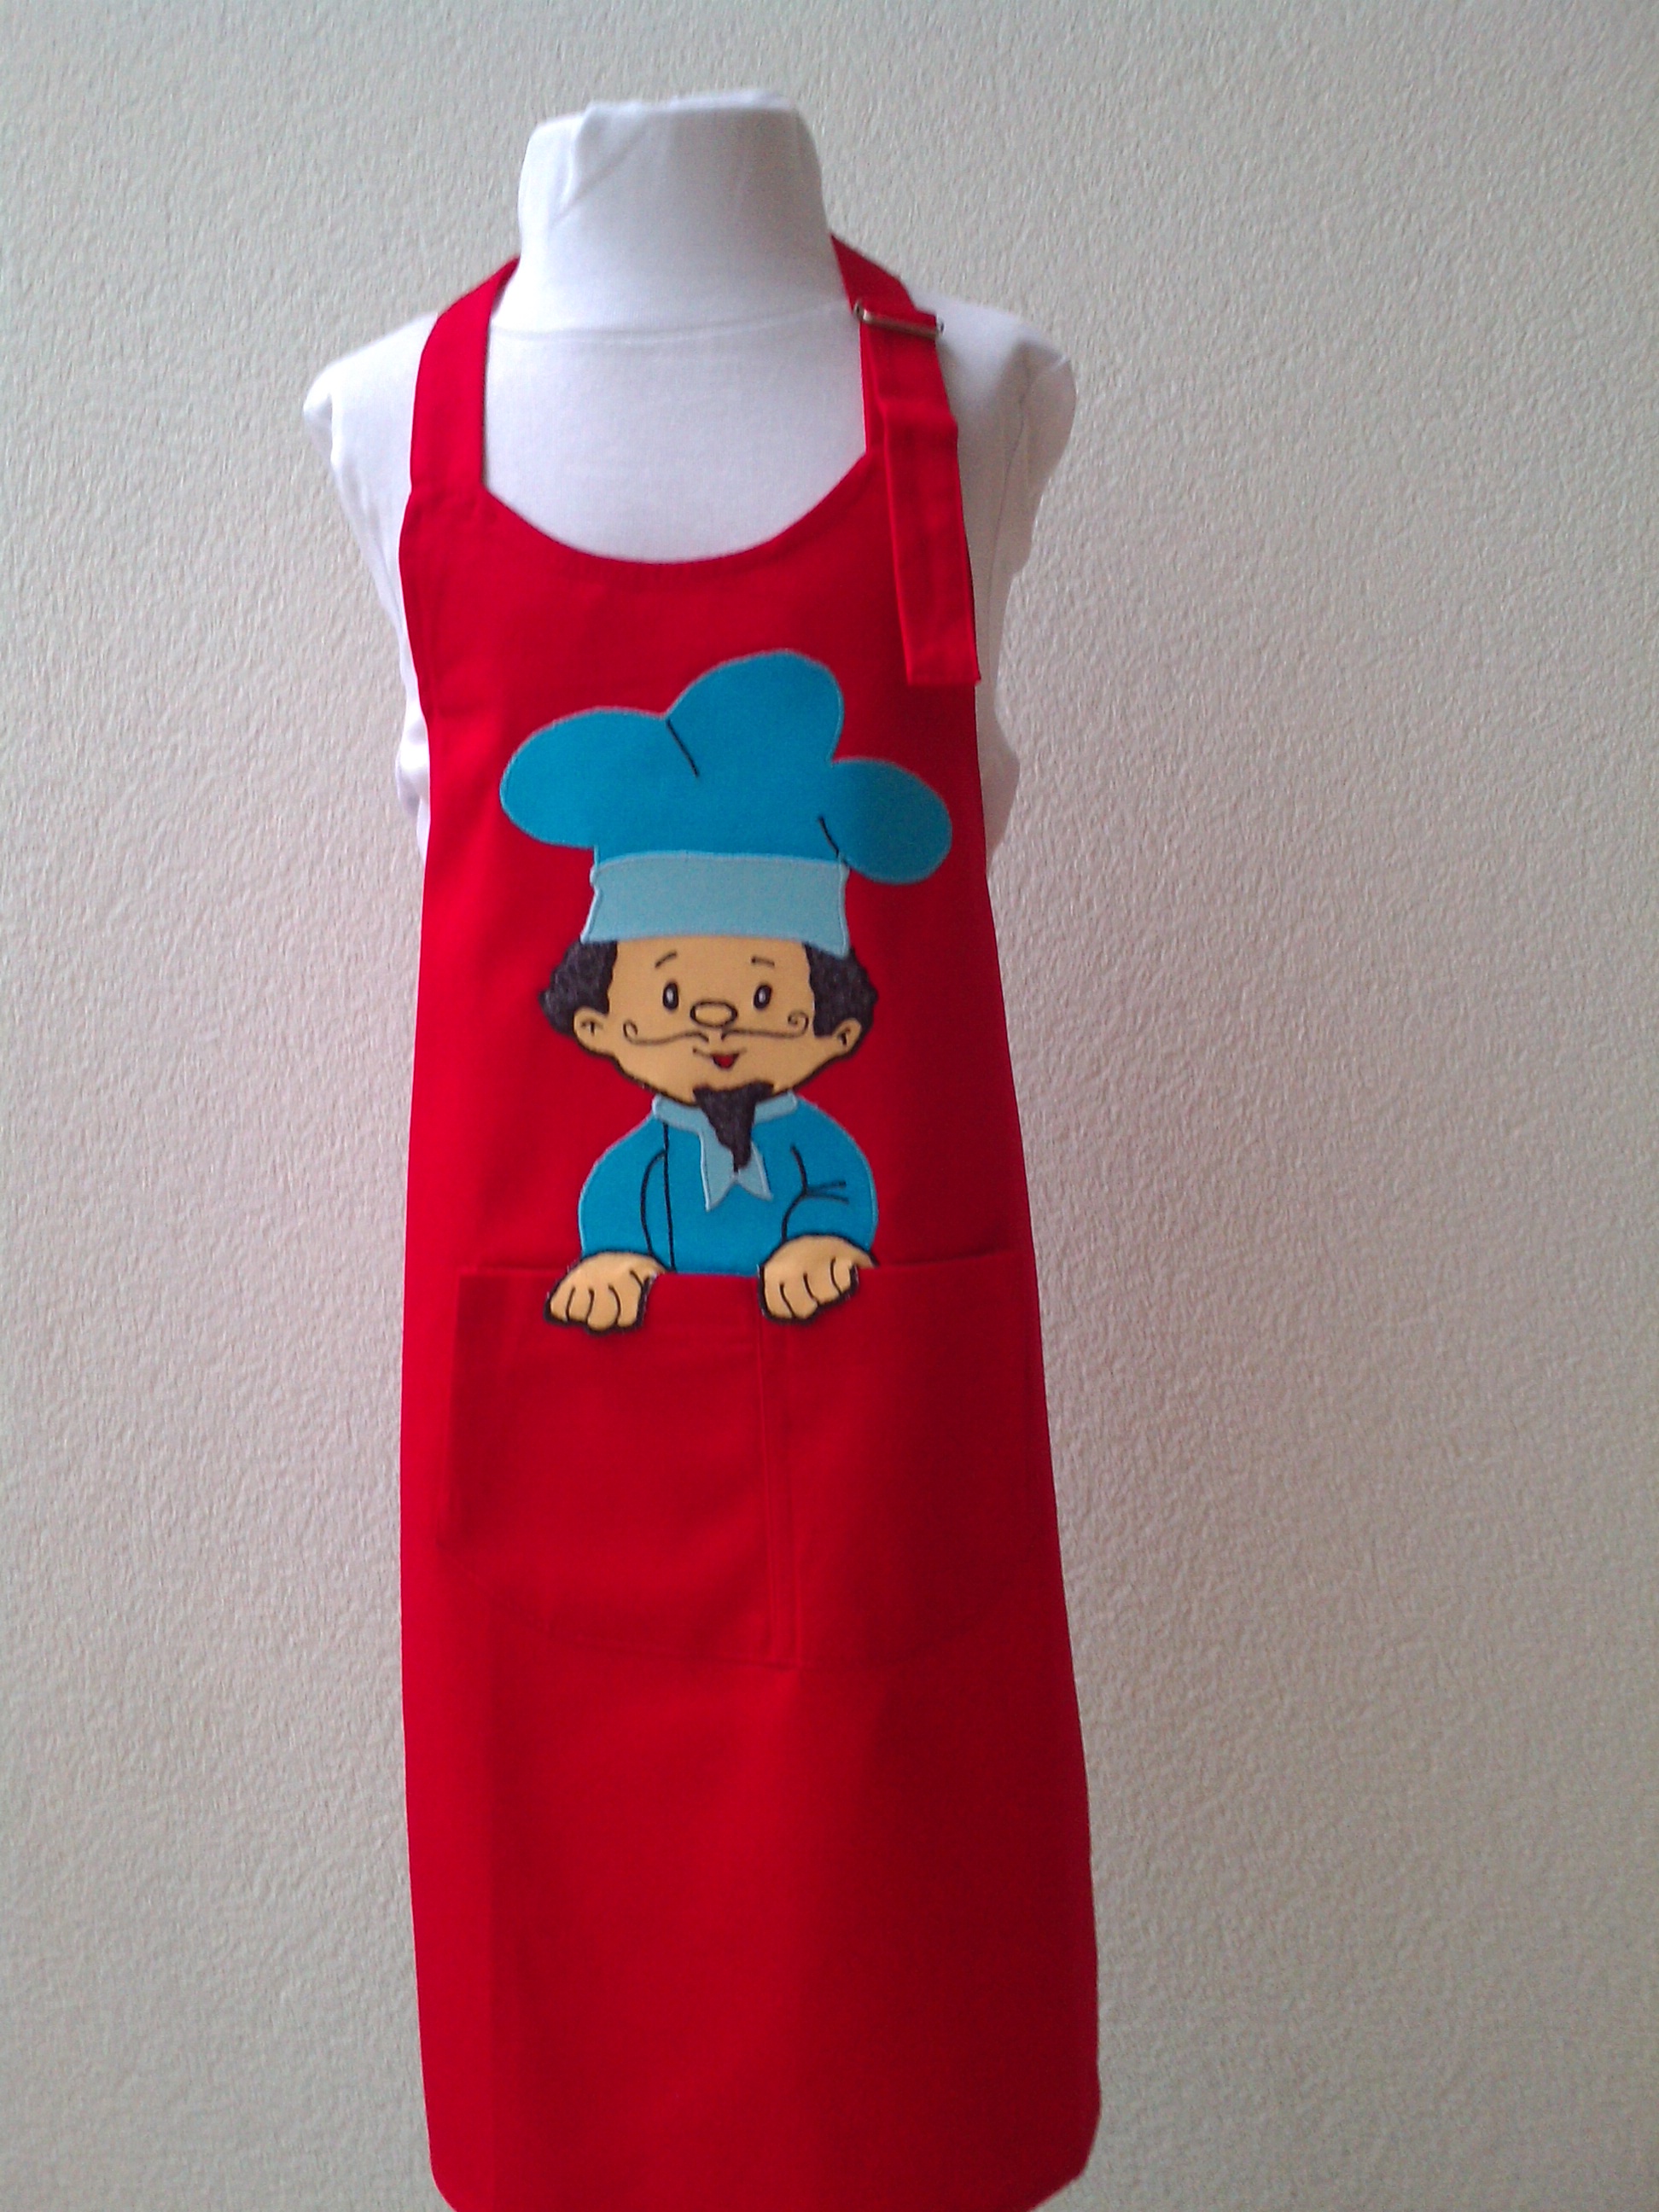 Davantal infantil vermell amb la imatge d'un cuiner.